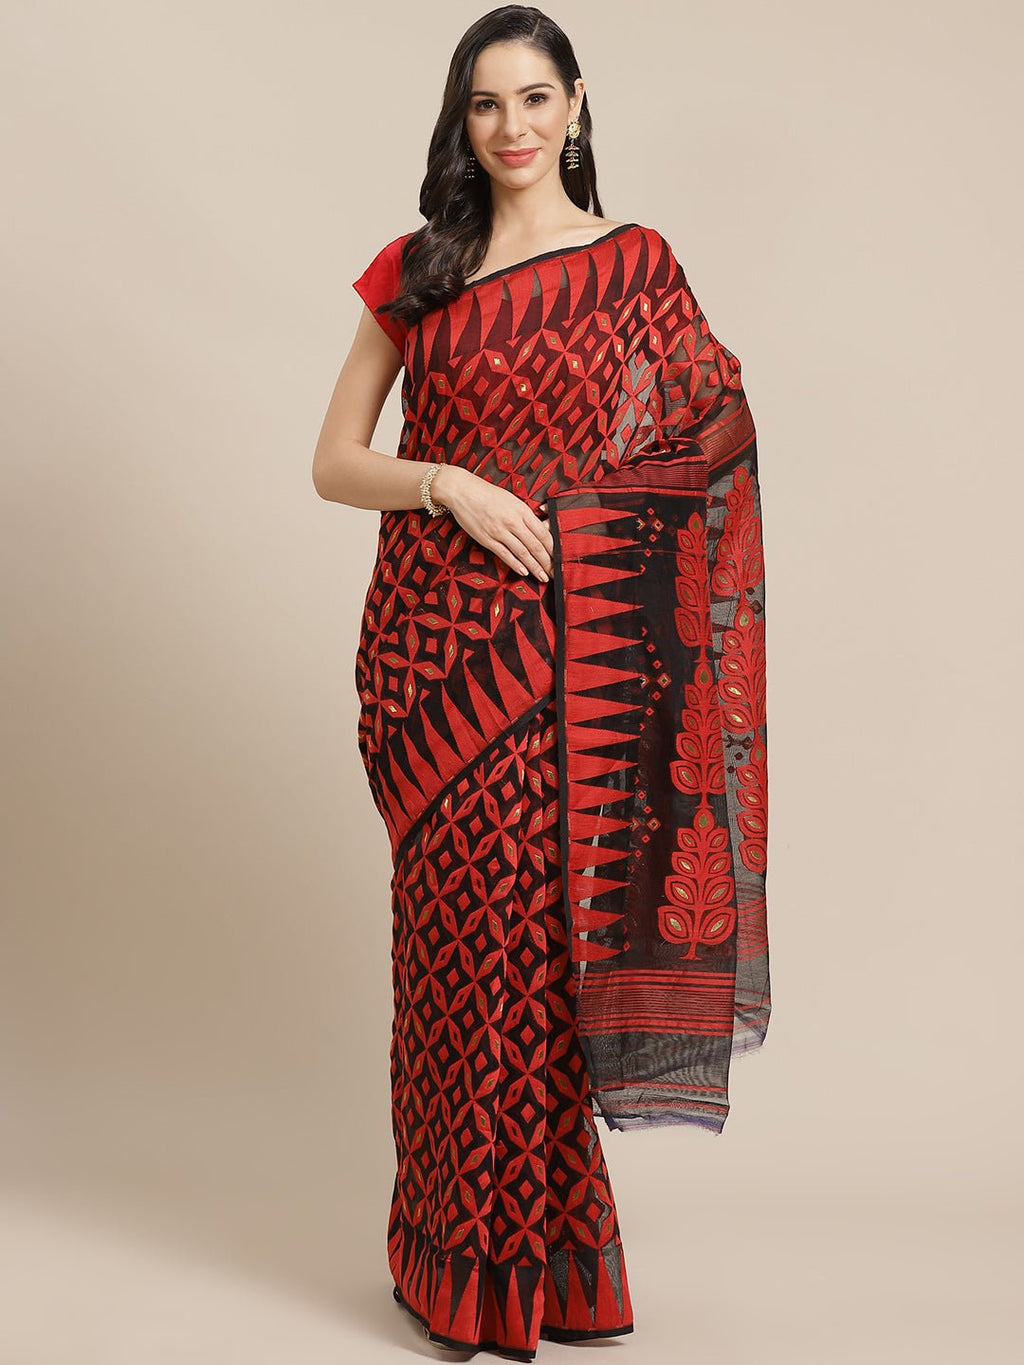 Black and Red, Kalakari India Jamdani Silk Cotton Woven Design Saree without blouse CHBHSA0012 - Kalakari India